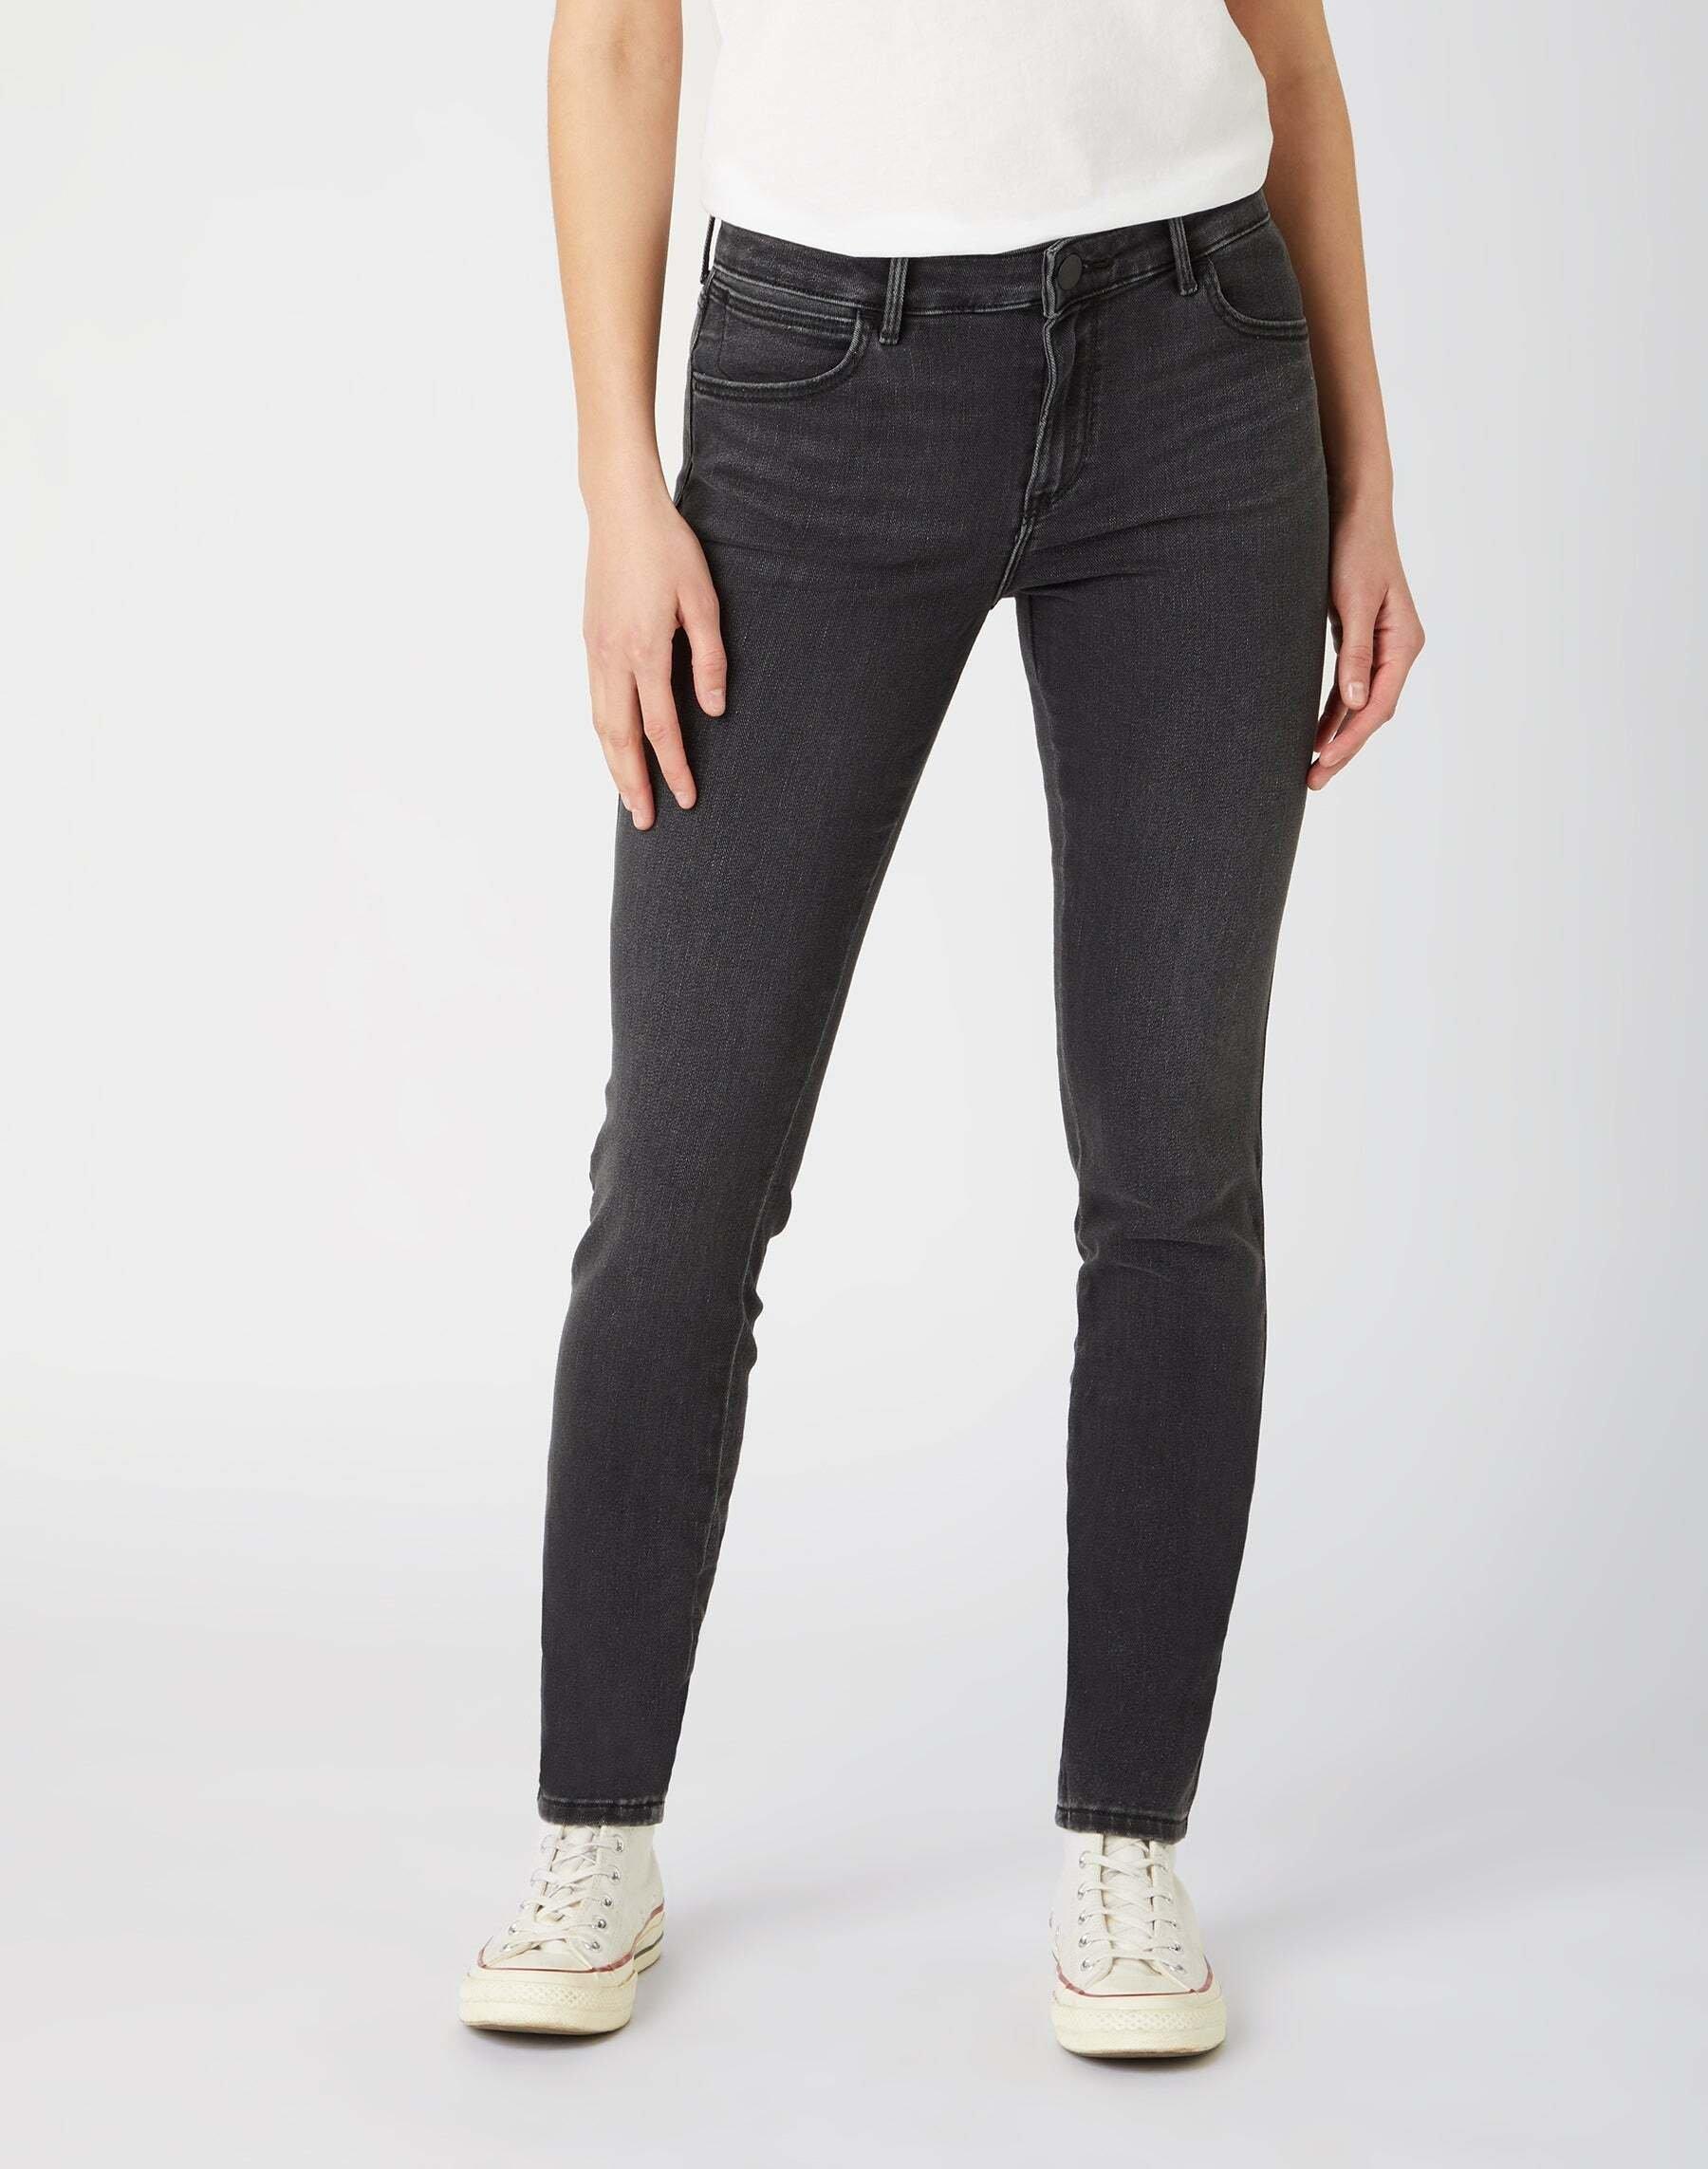 Jeans Skinny Fit Skinny Damen Schwarz Leicht L34/W29 von Wrangler